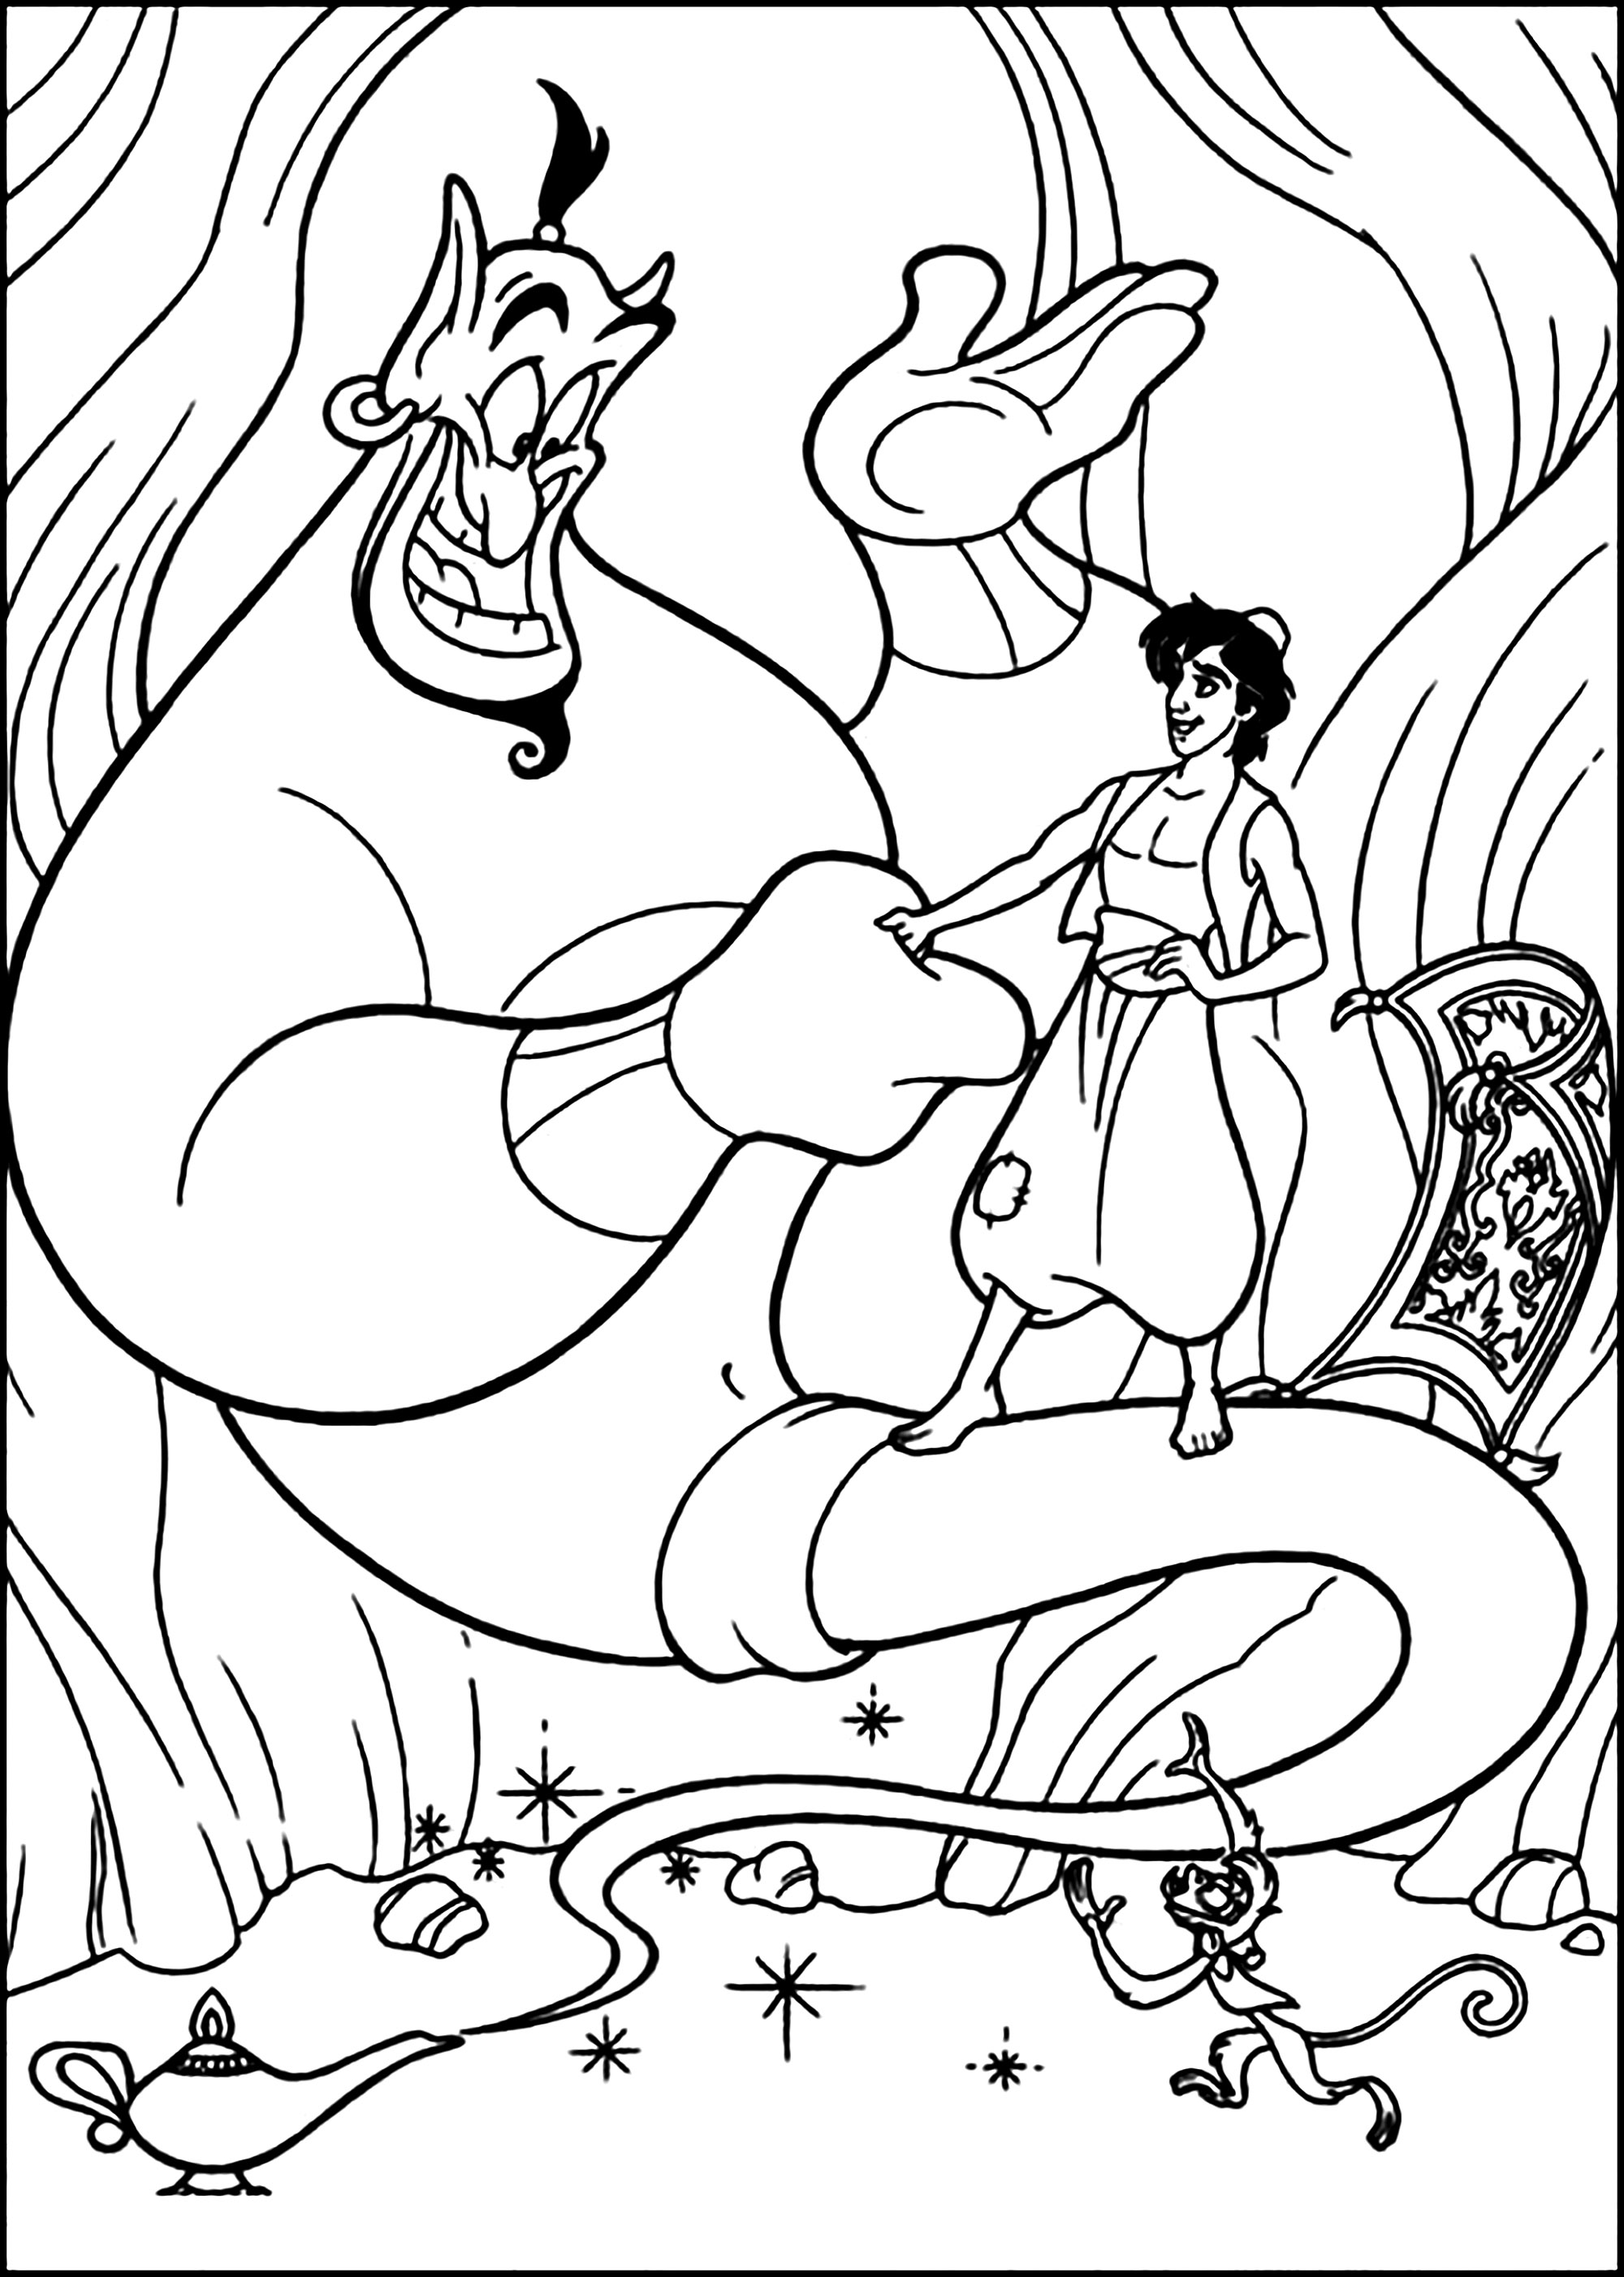 Aladino e o Génio na caverna - Aladin e Jasmine - Páginas para colorir para  crianças